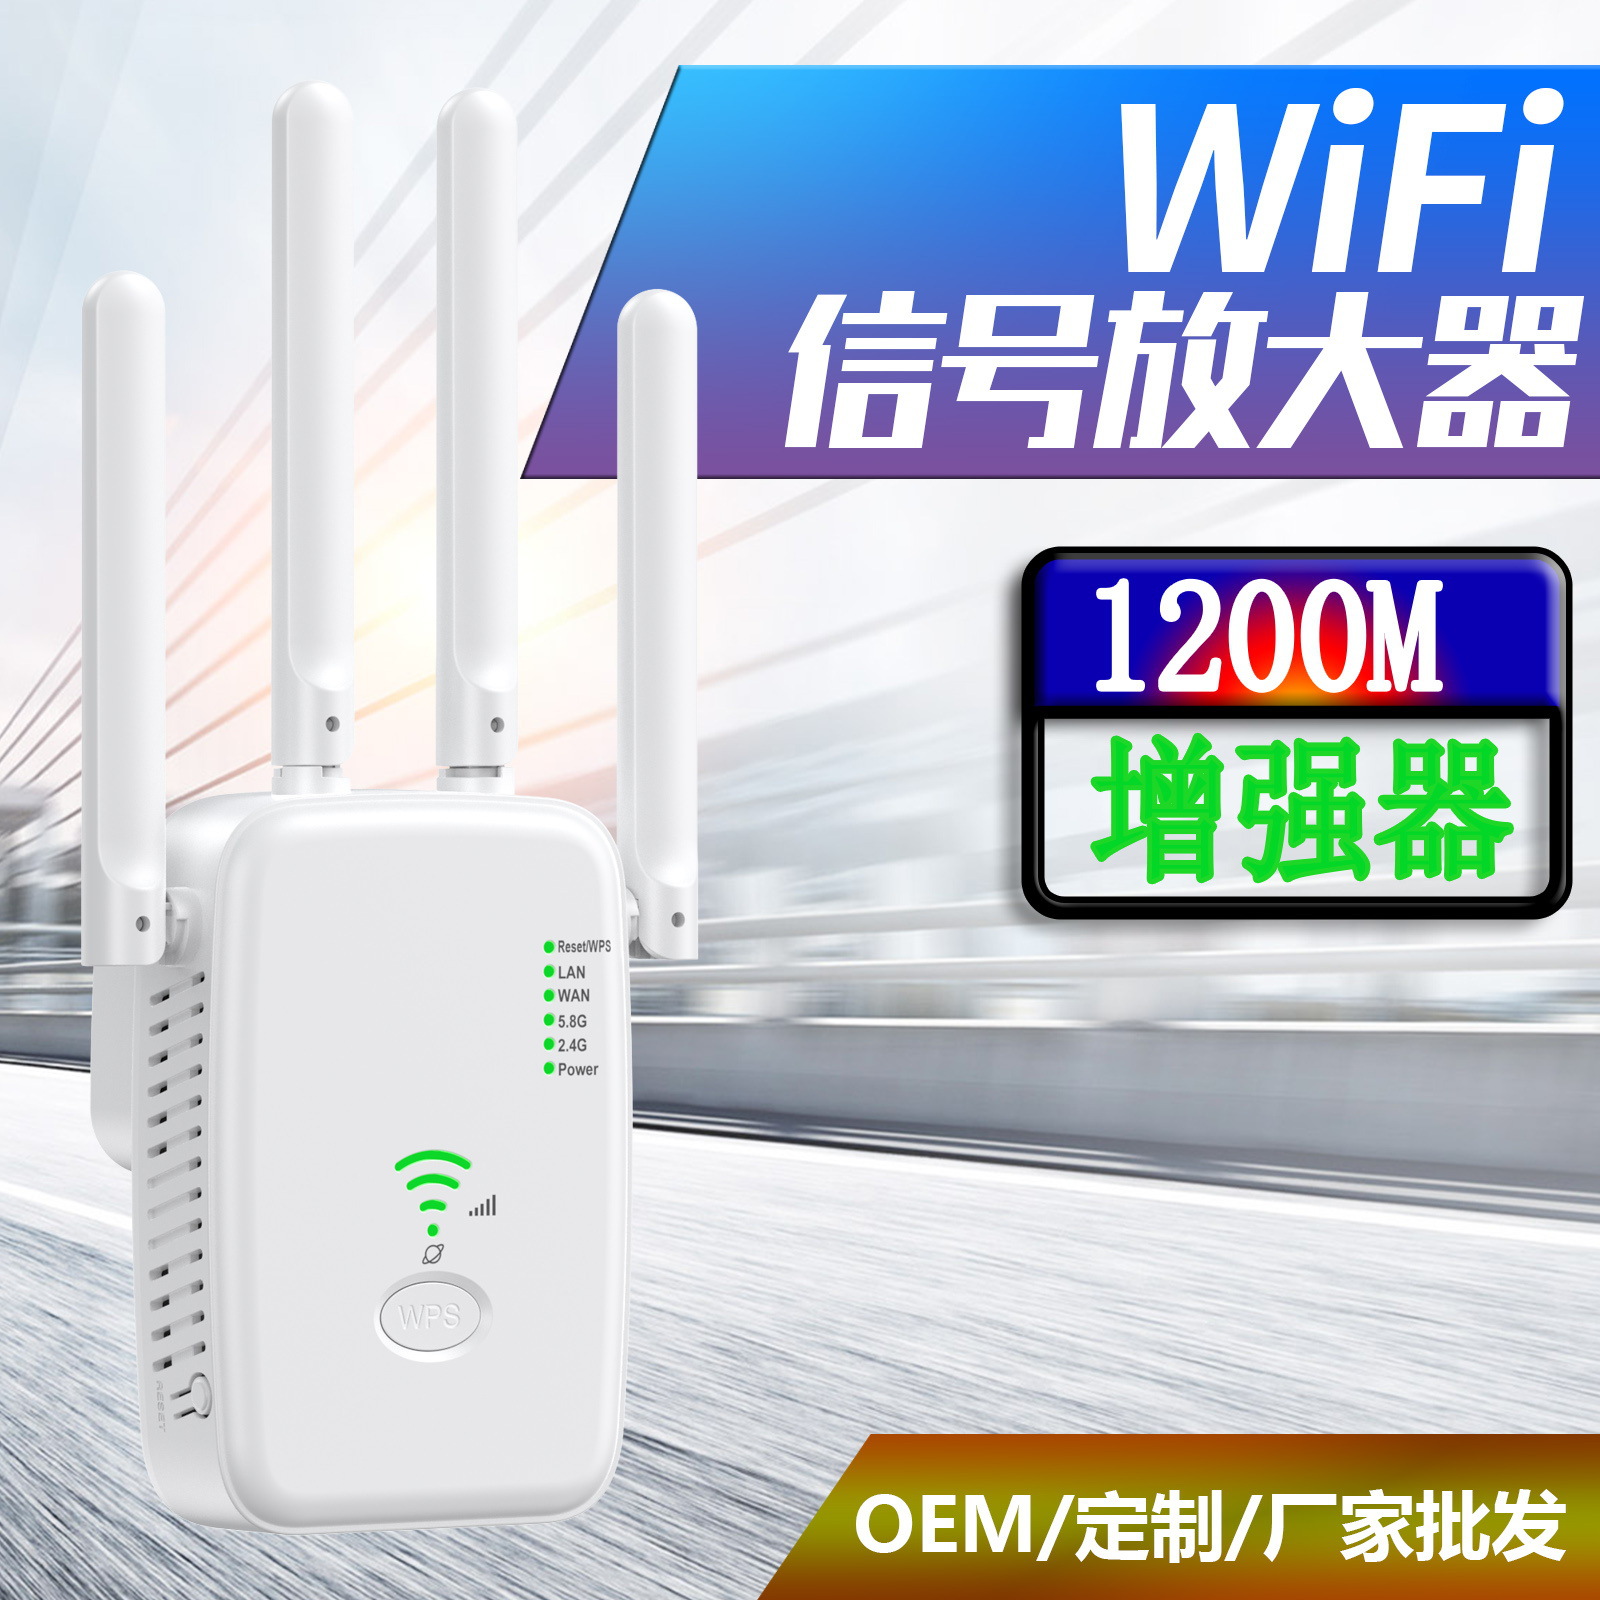 无线中继器路由器wifi信号放大器1200M双频2.4G/5G网络增强扩展器